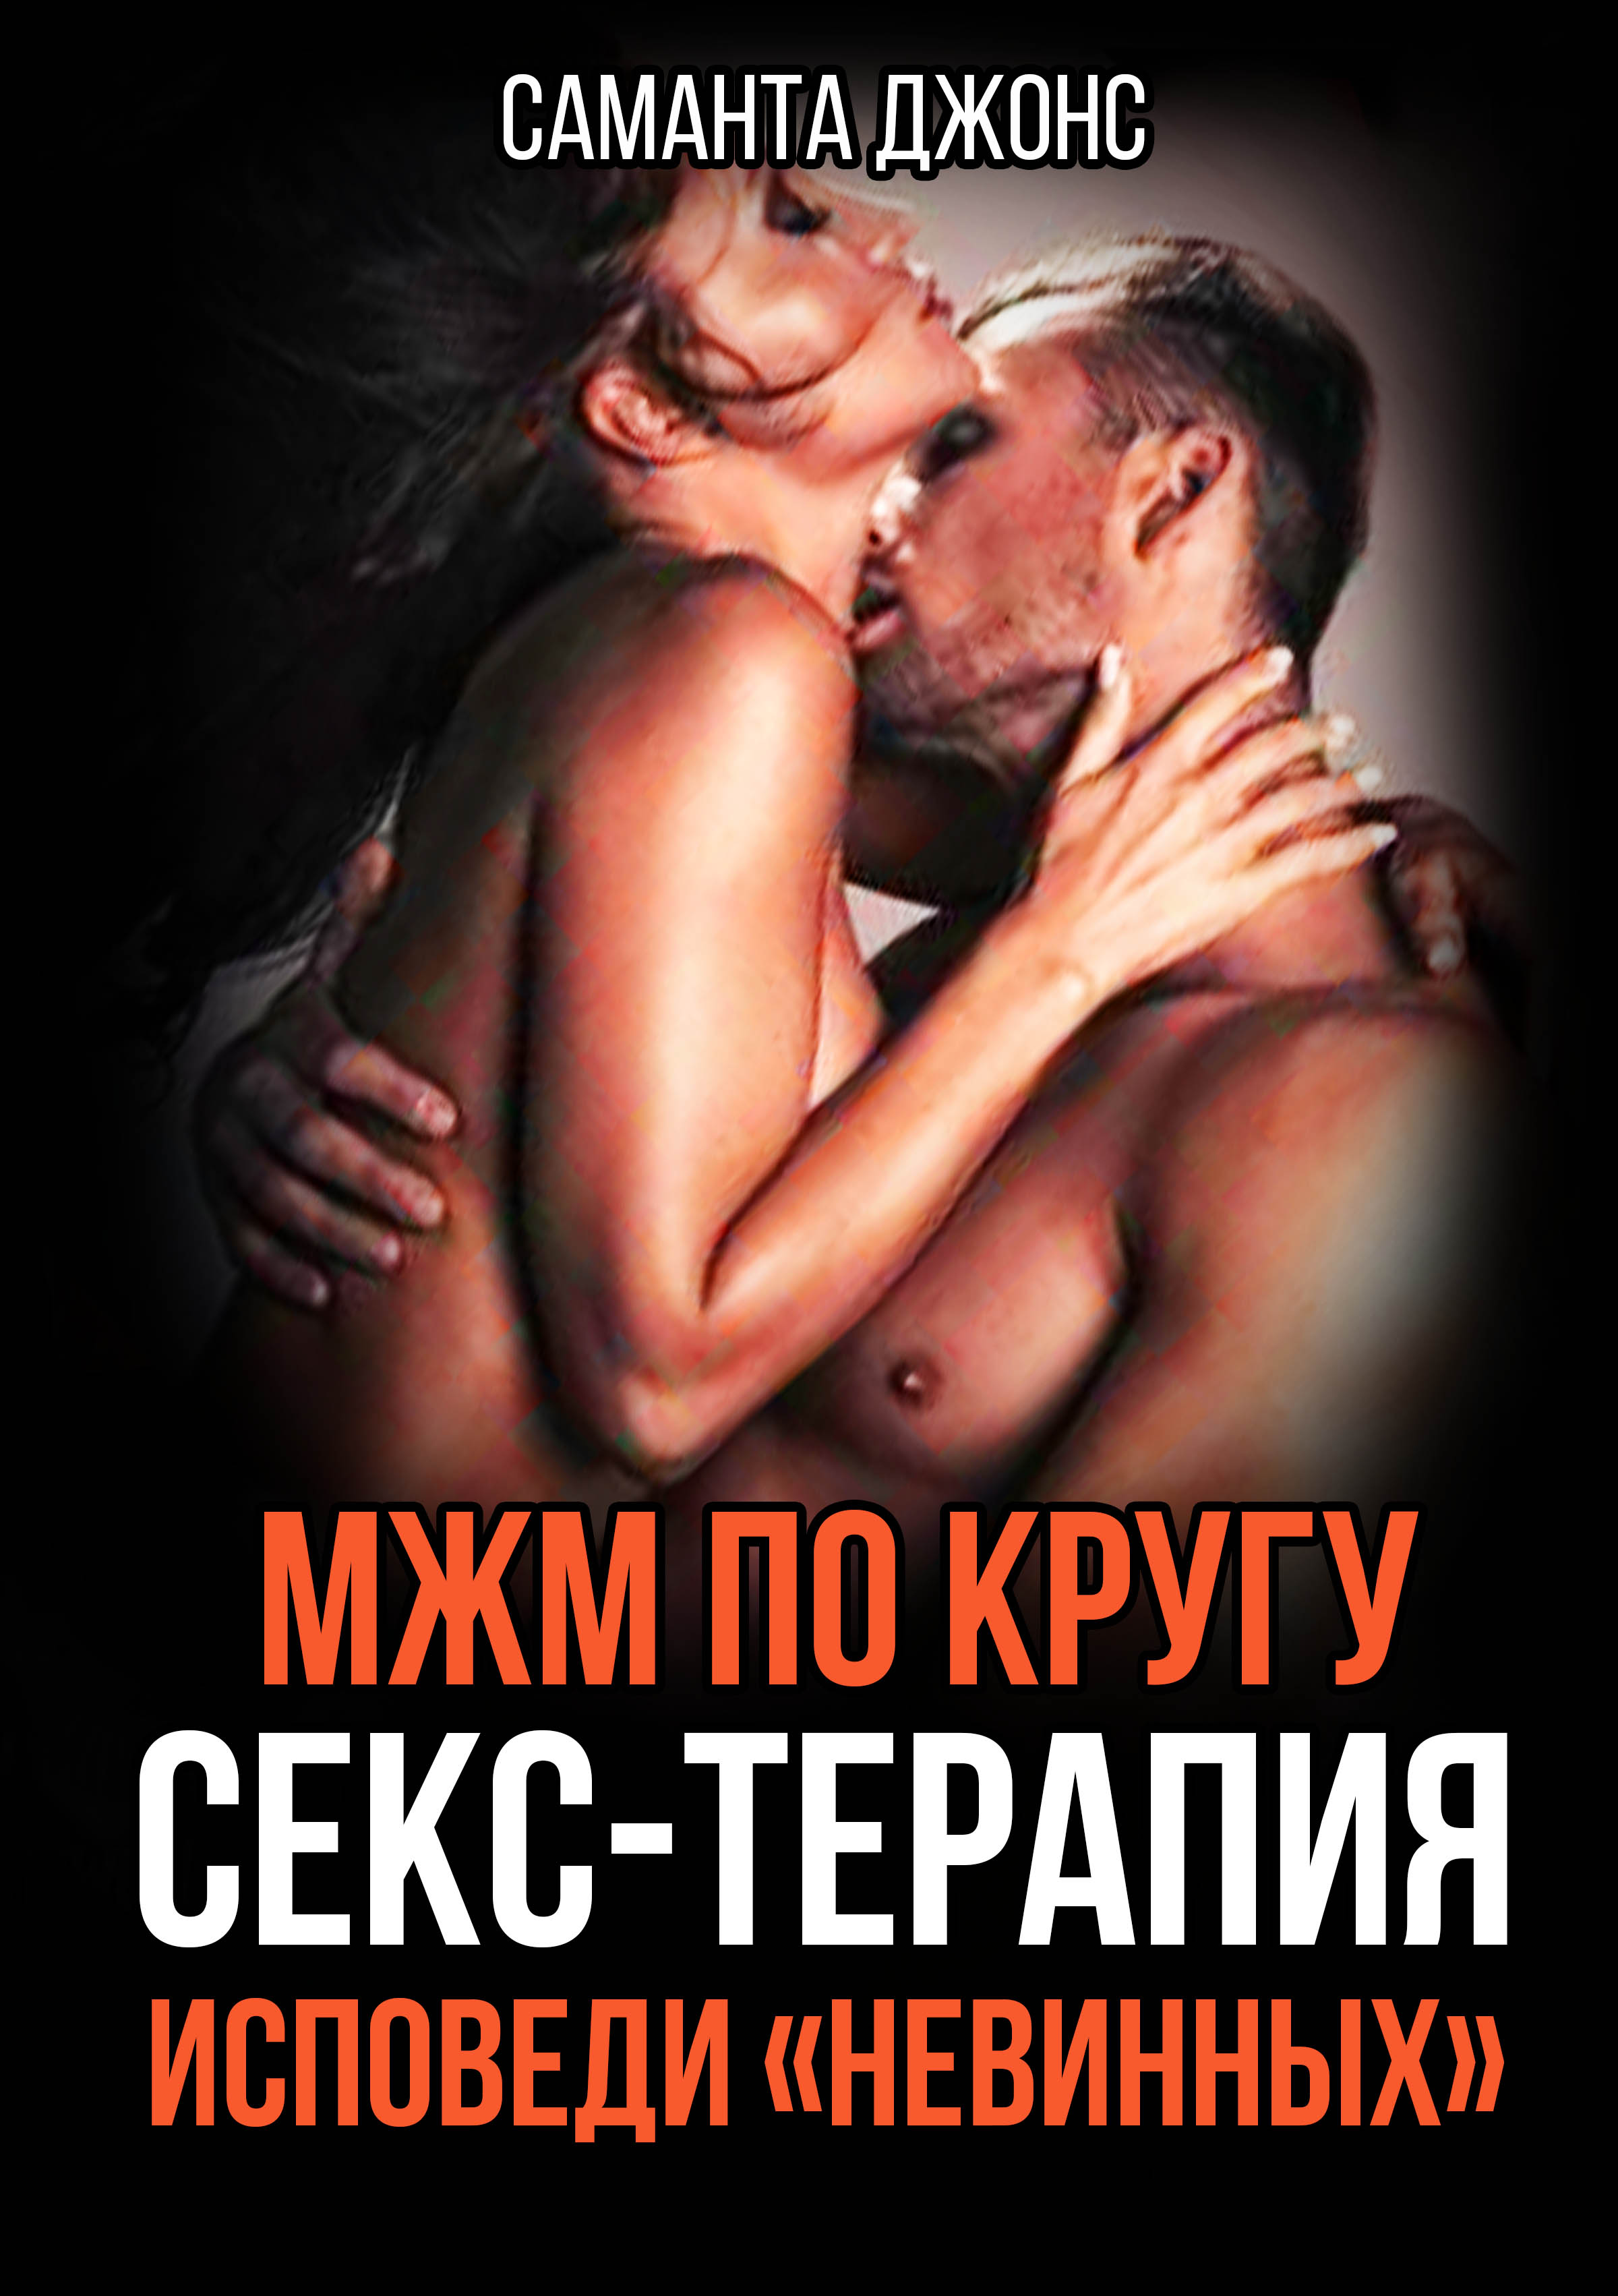 Лило и стич гей секс - порно видео смотреть онлайн на chelmass.ru